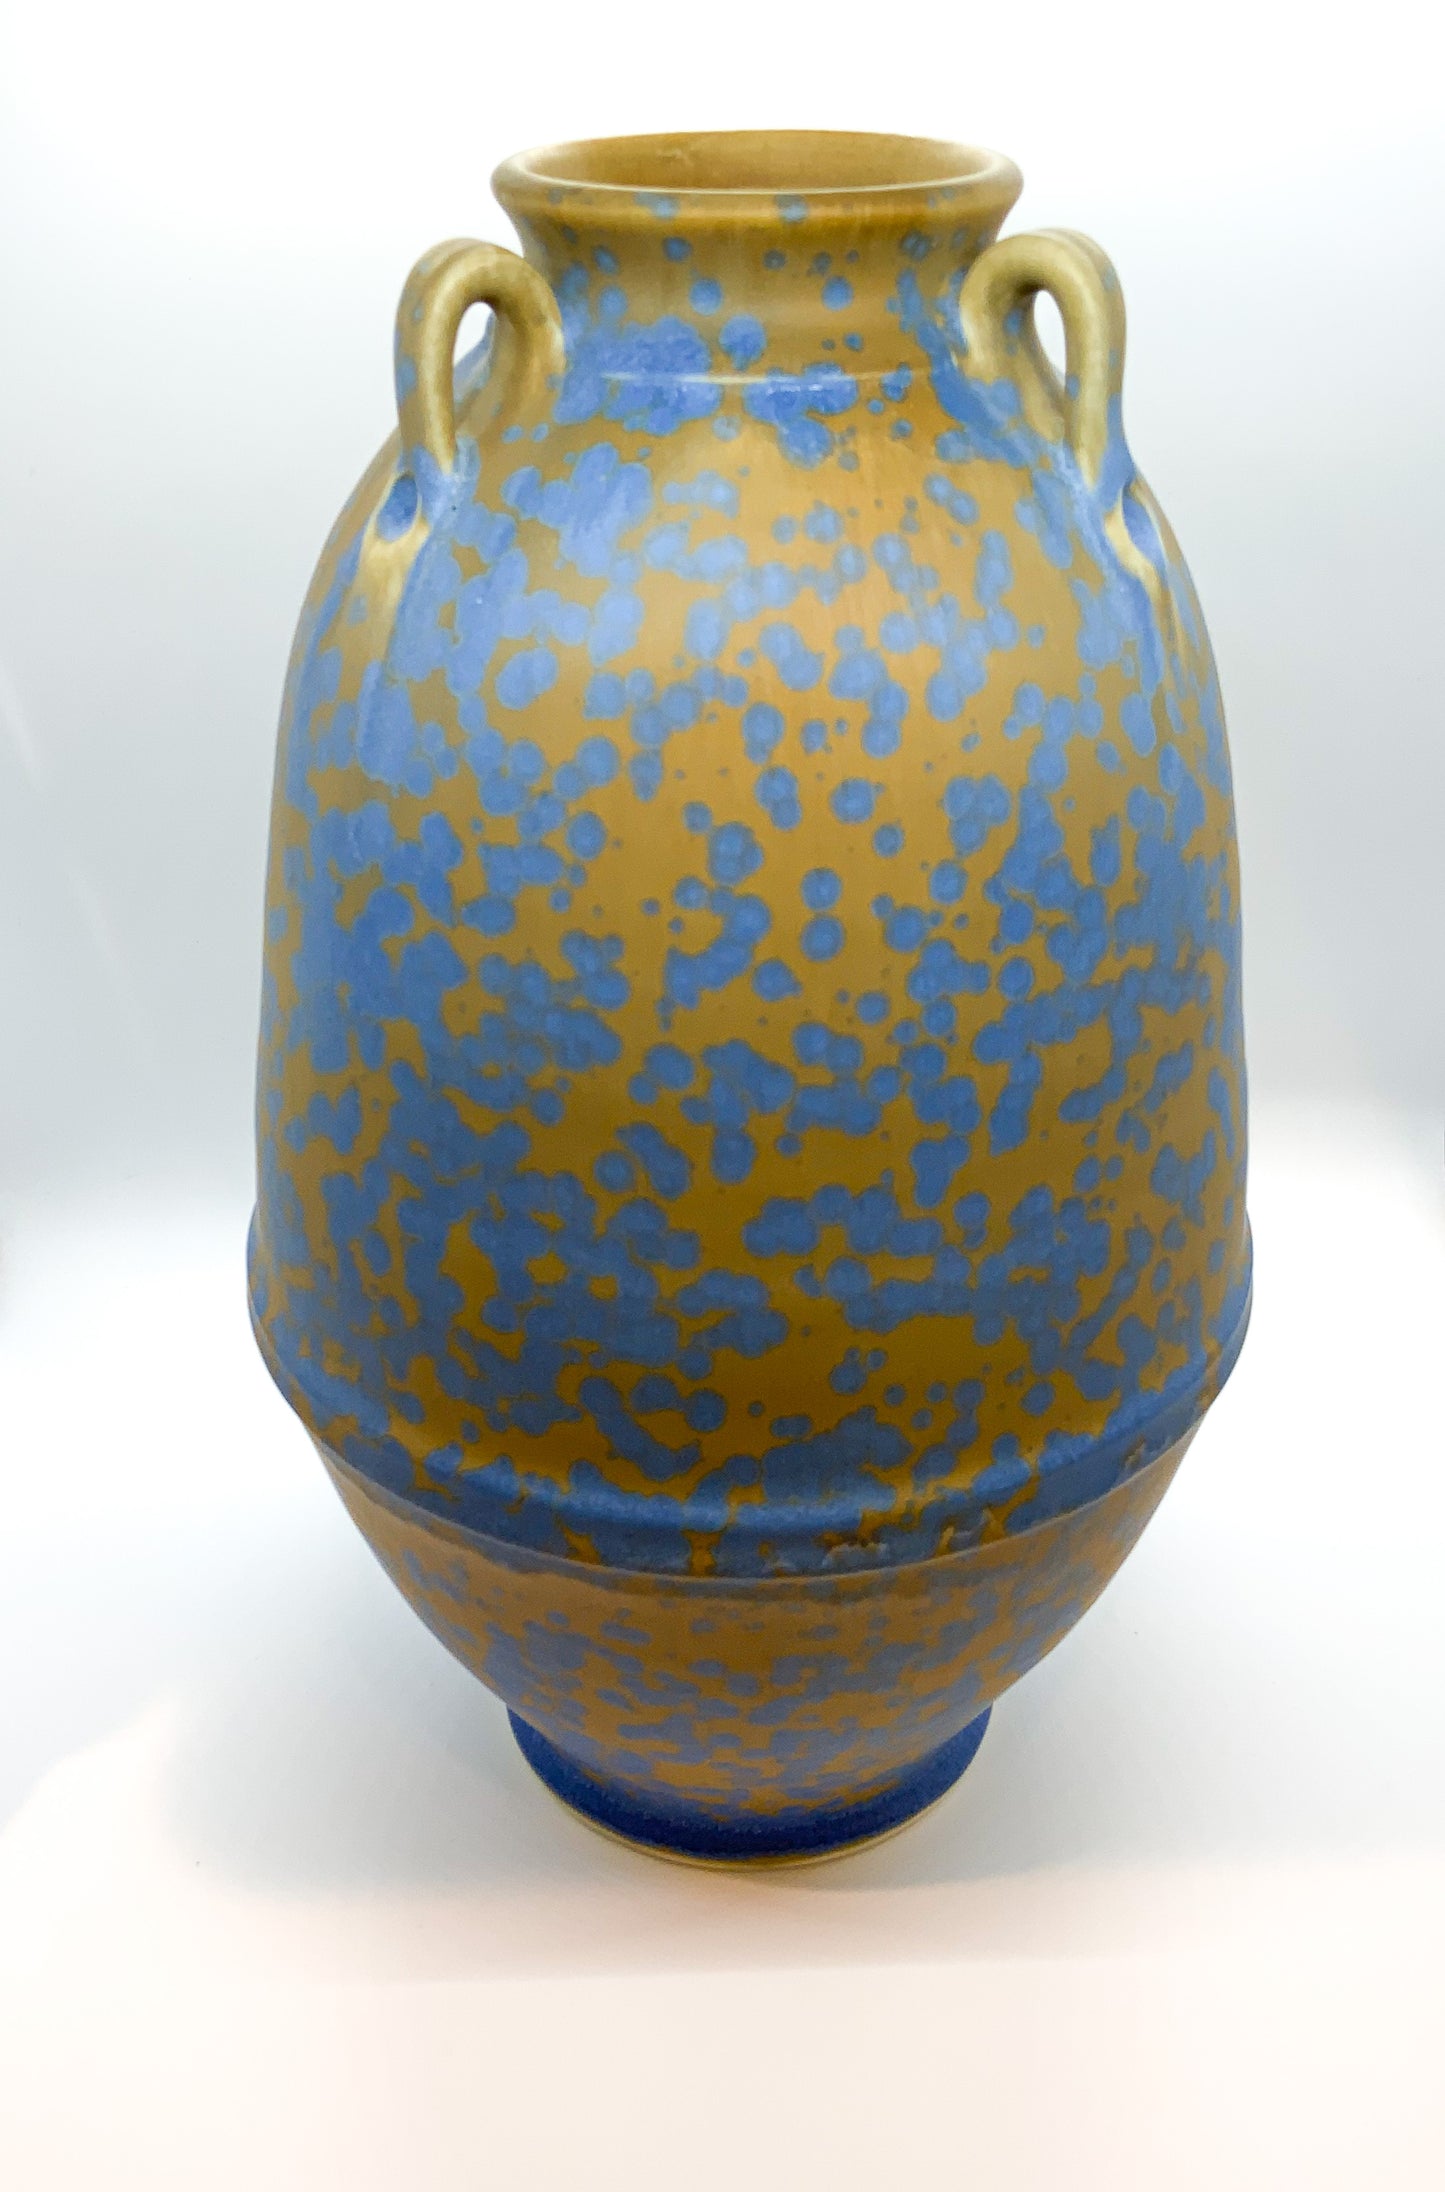 Ben Owen III Edo Jar in Blue Stardust